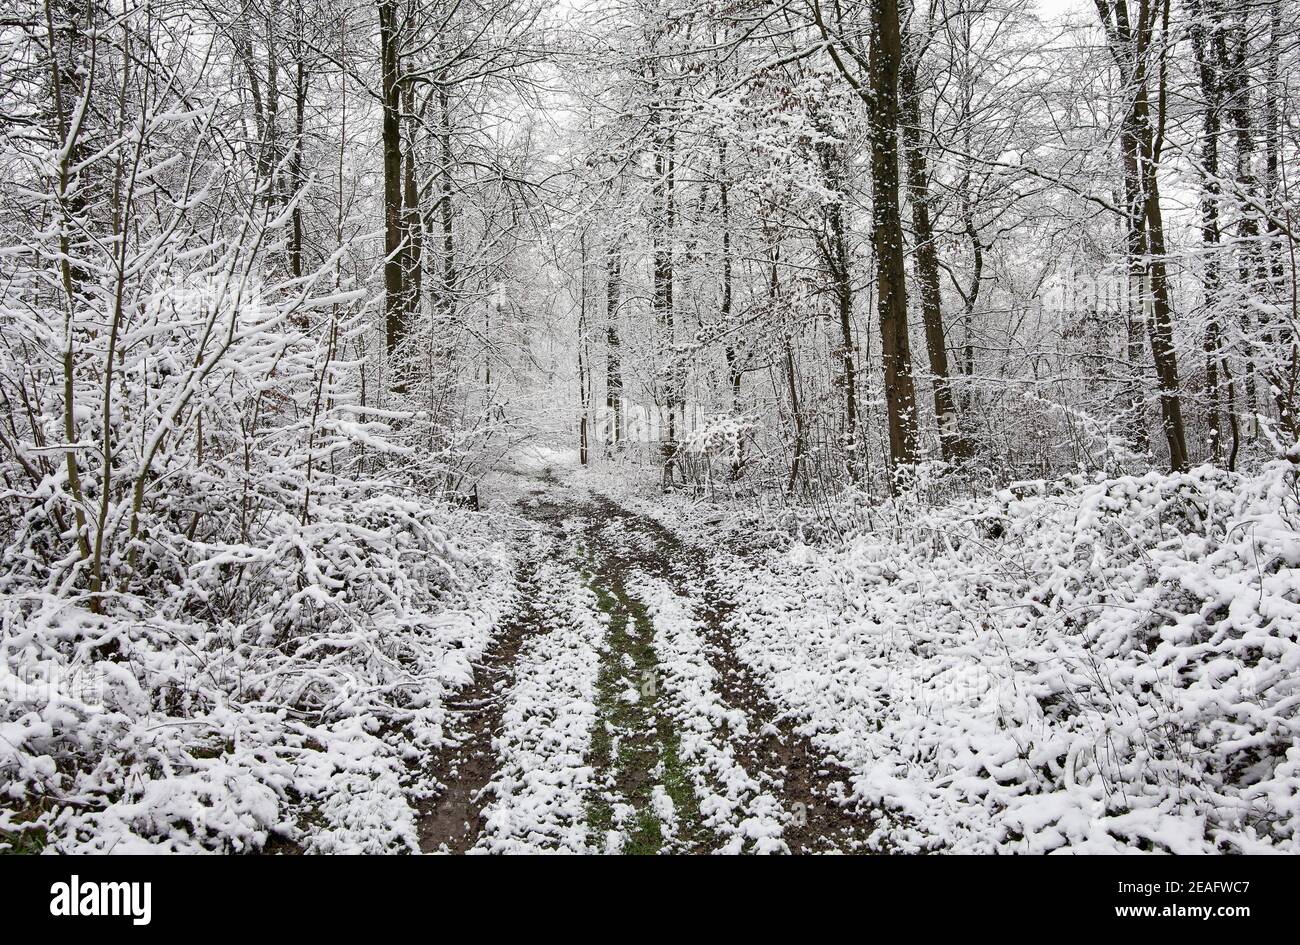 Sentiero che conduce attraverso la foresta innevata con alberi innevati in inverno freddo. Foto Stock